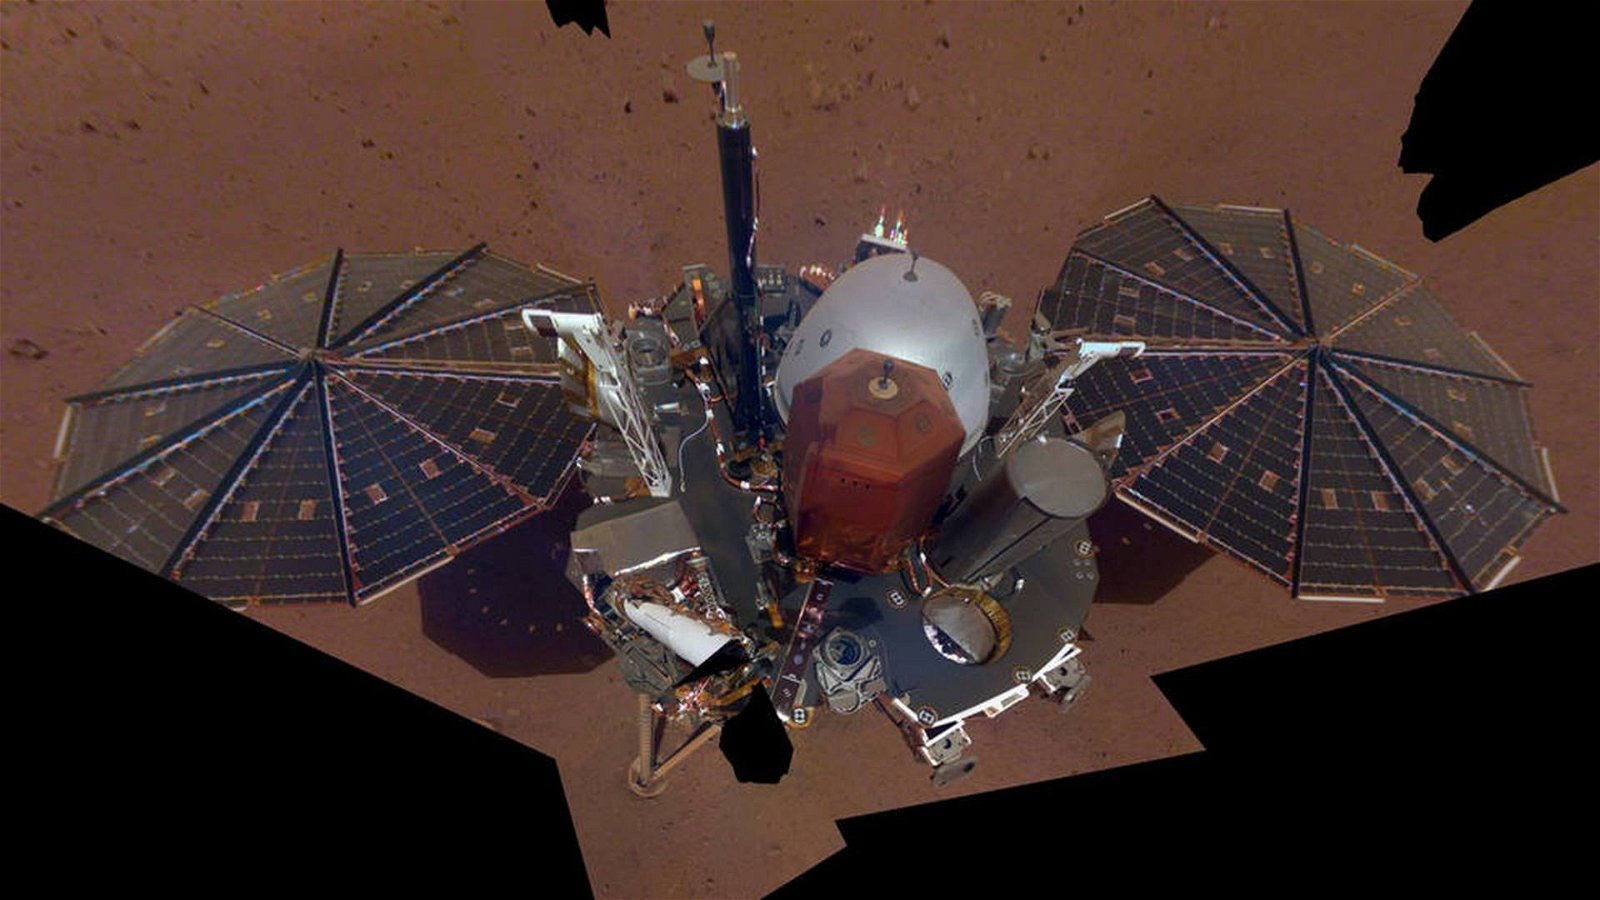 Immagine di Marte, lander NASA in modalità provvisoria a causa di una tempesta di polvere